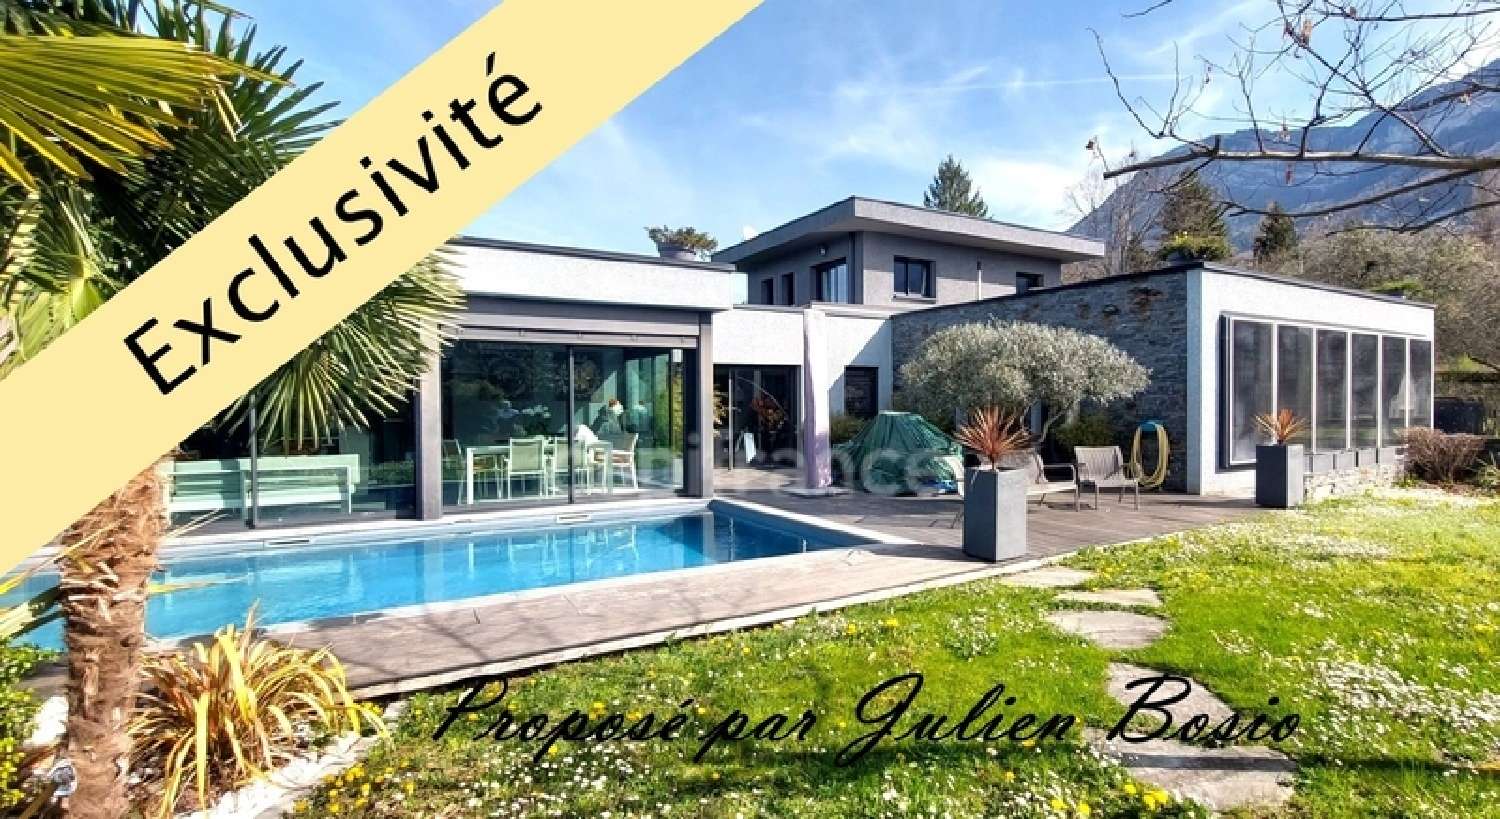  for sale house Aix-les-Bains Savoie 1